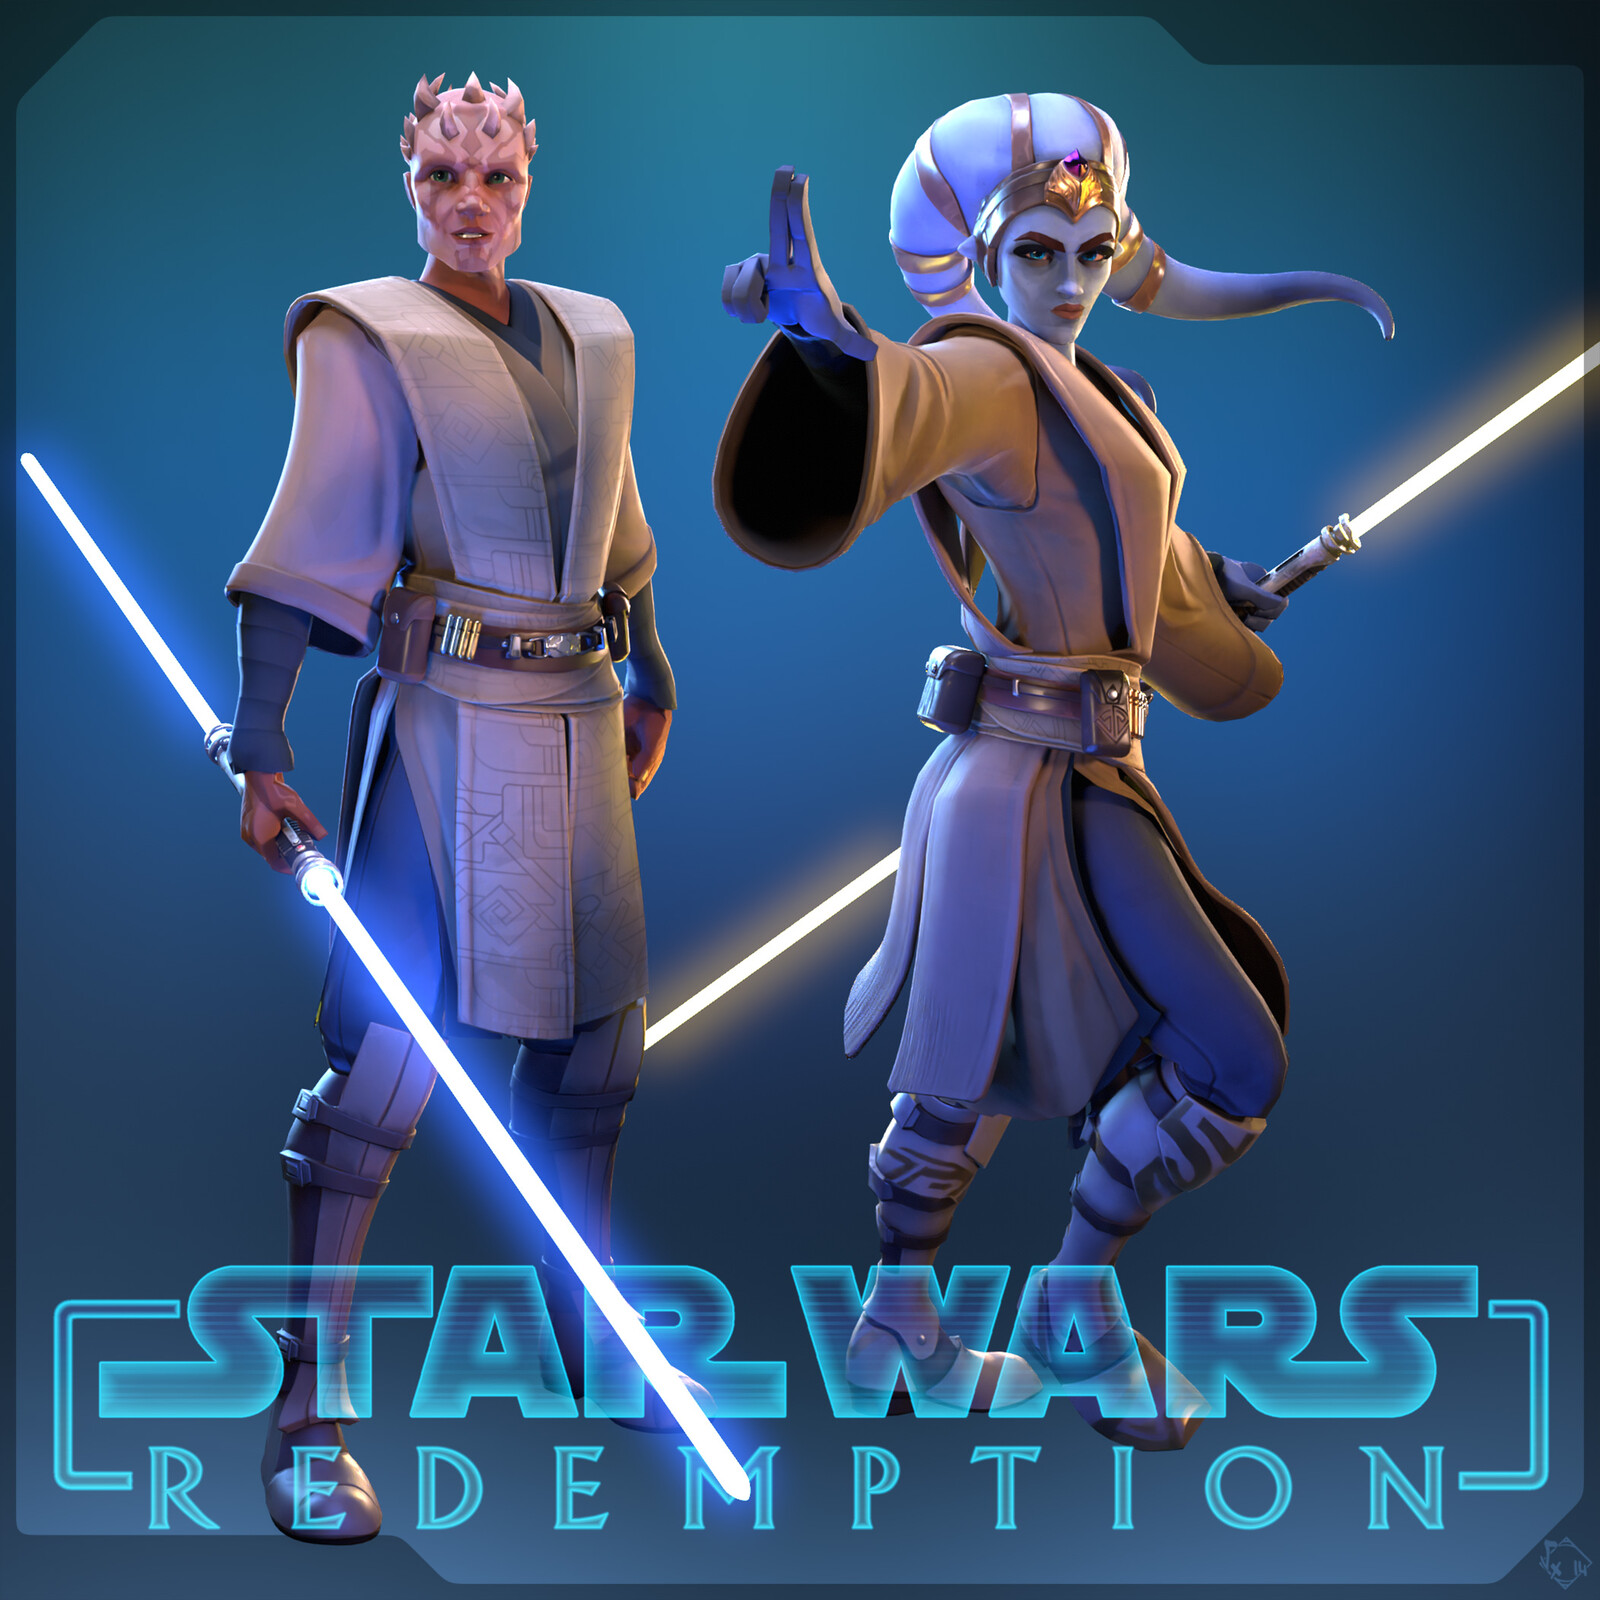 Star Wars - Redemption | Jedi Knights